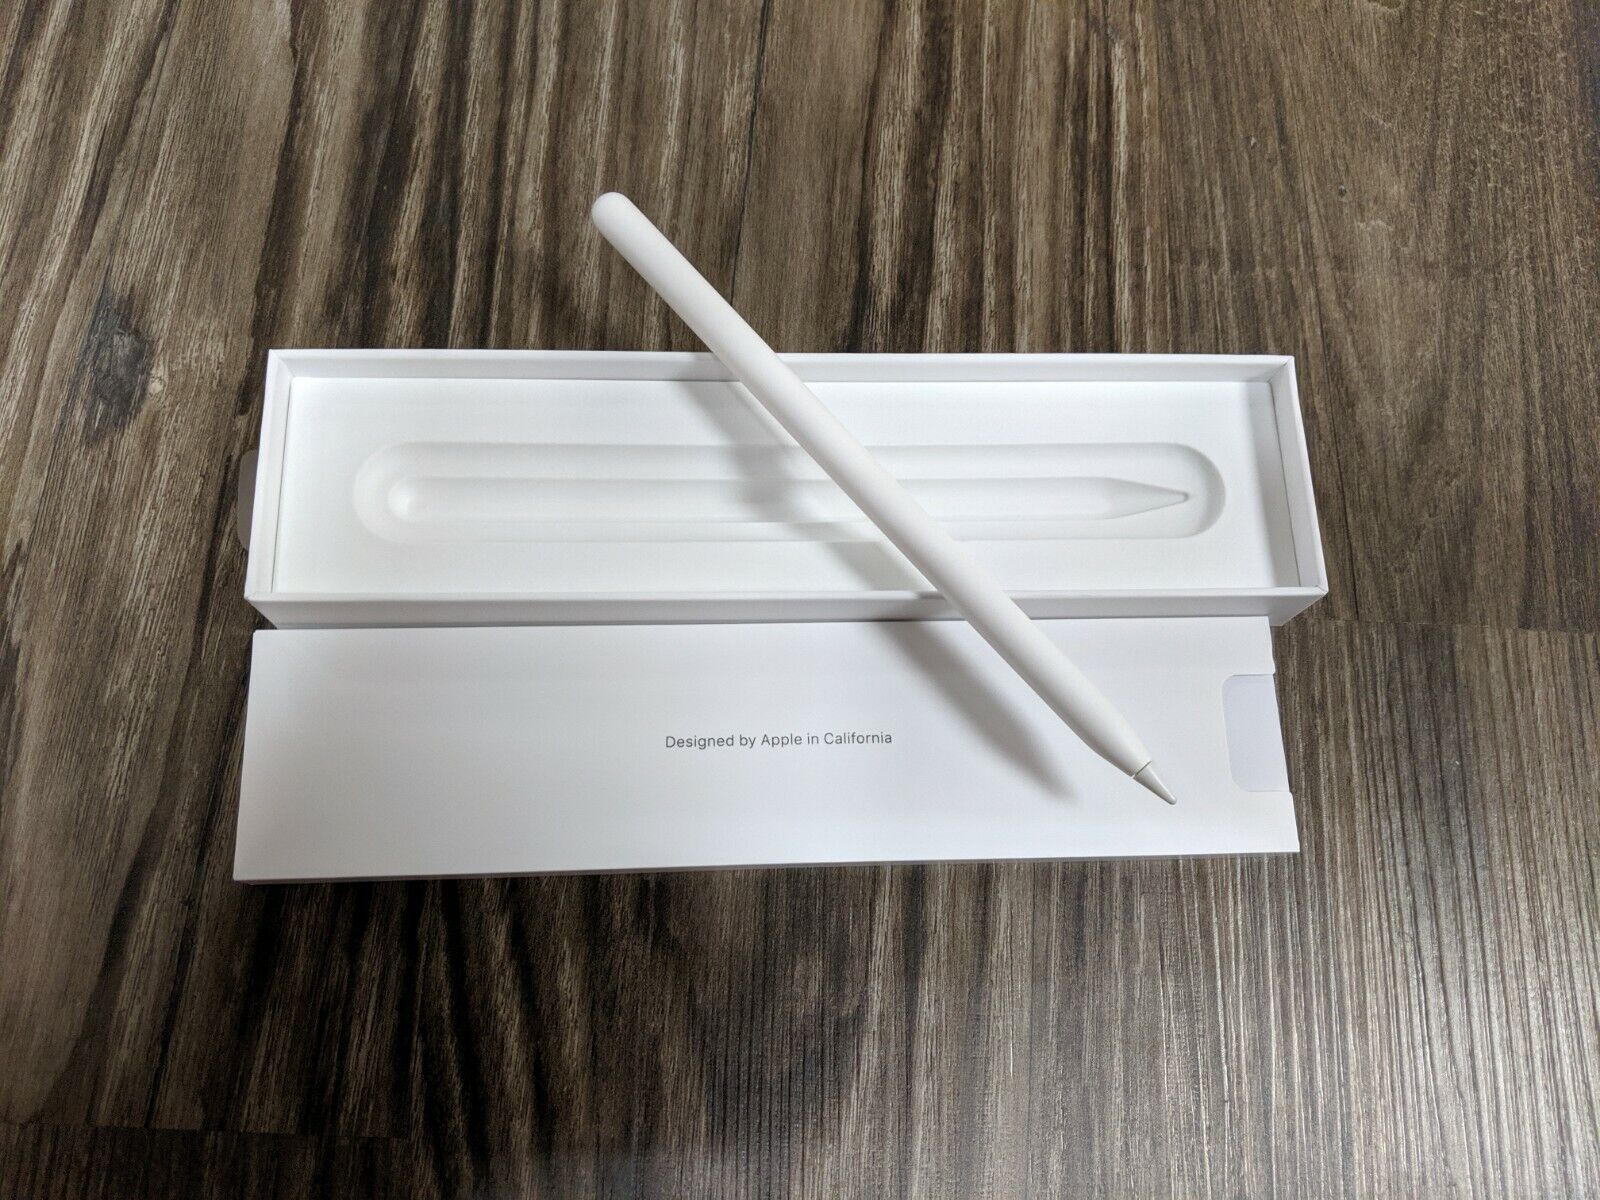 Apple Pencil 2nd Generation - Ipad Pro 12.9 and 11 - MU8F2AM/A - Free Shipping